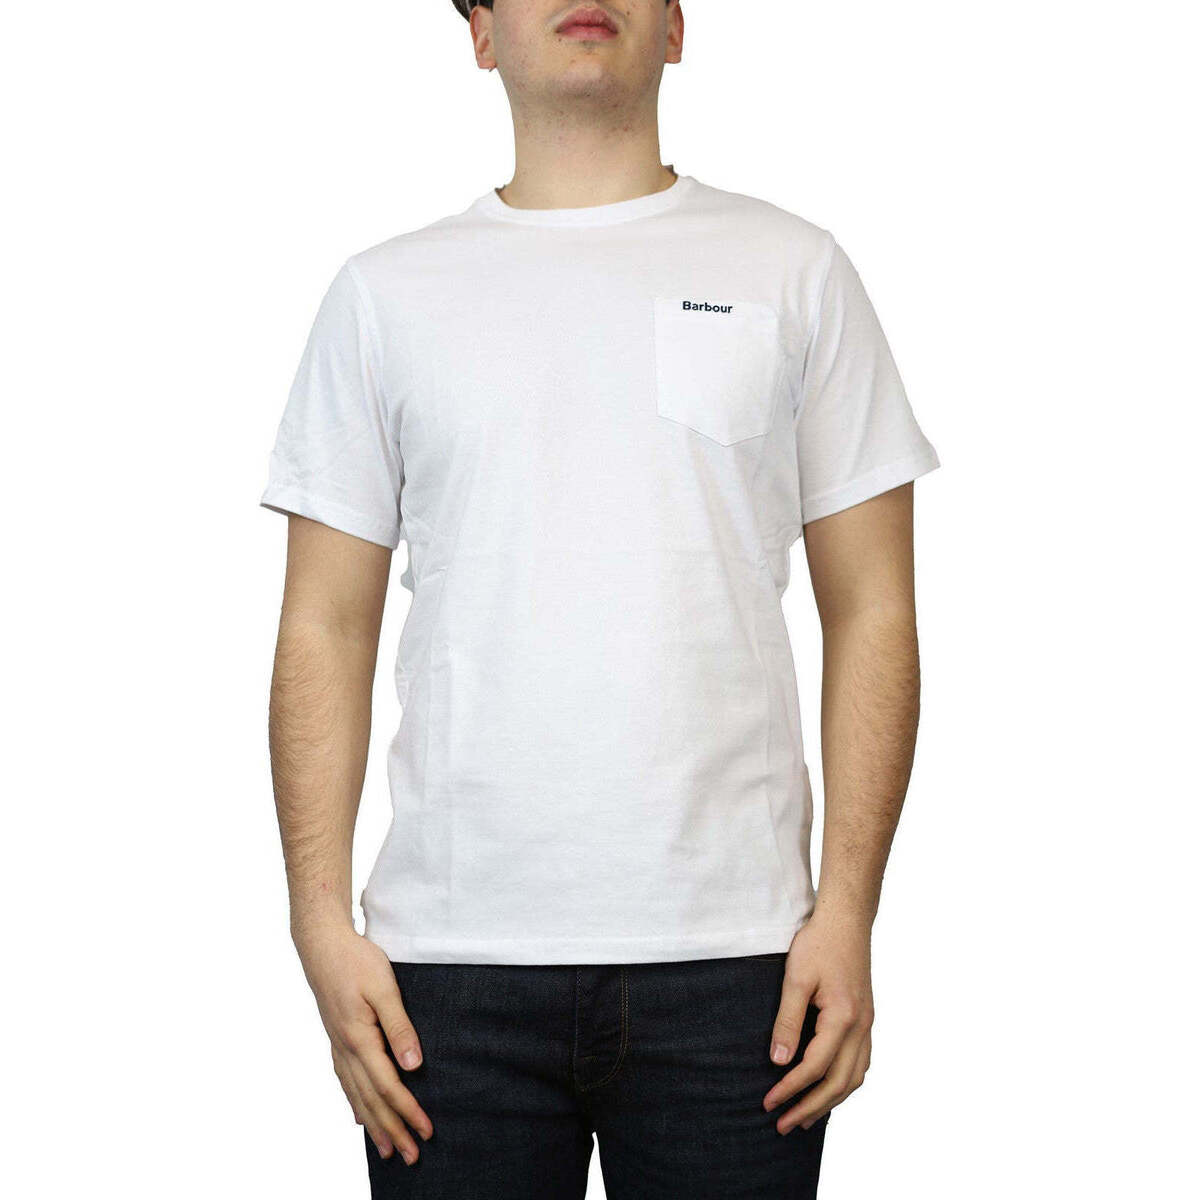 Vêtements Homme Utmärkt lätt och andningsbar t-shirt för sommarbruk  Blanc